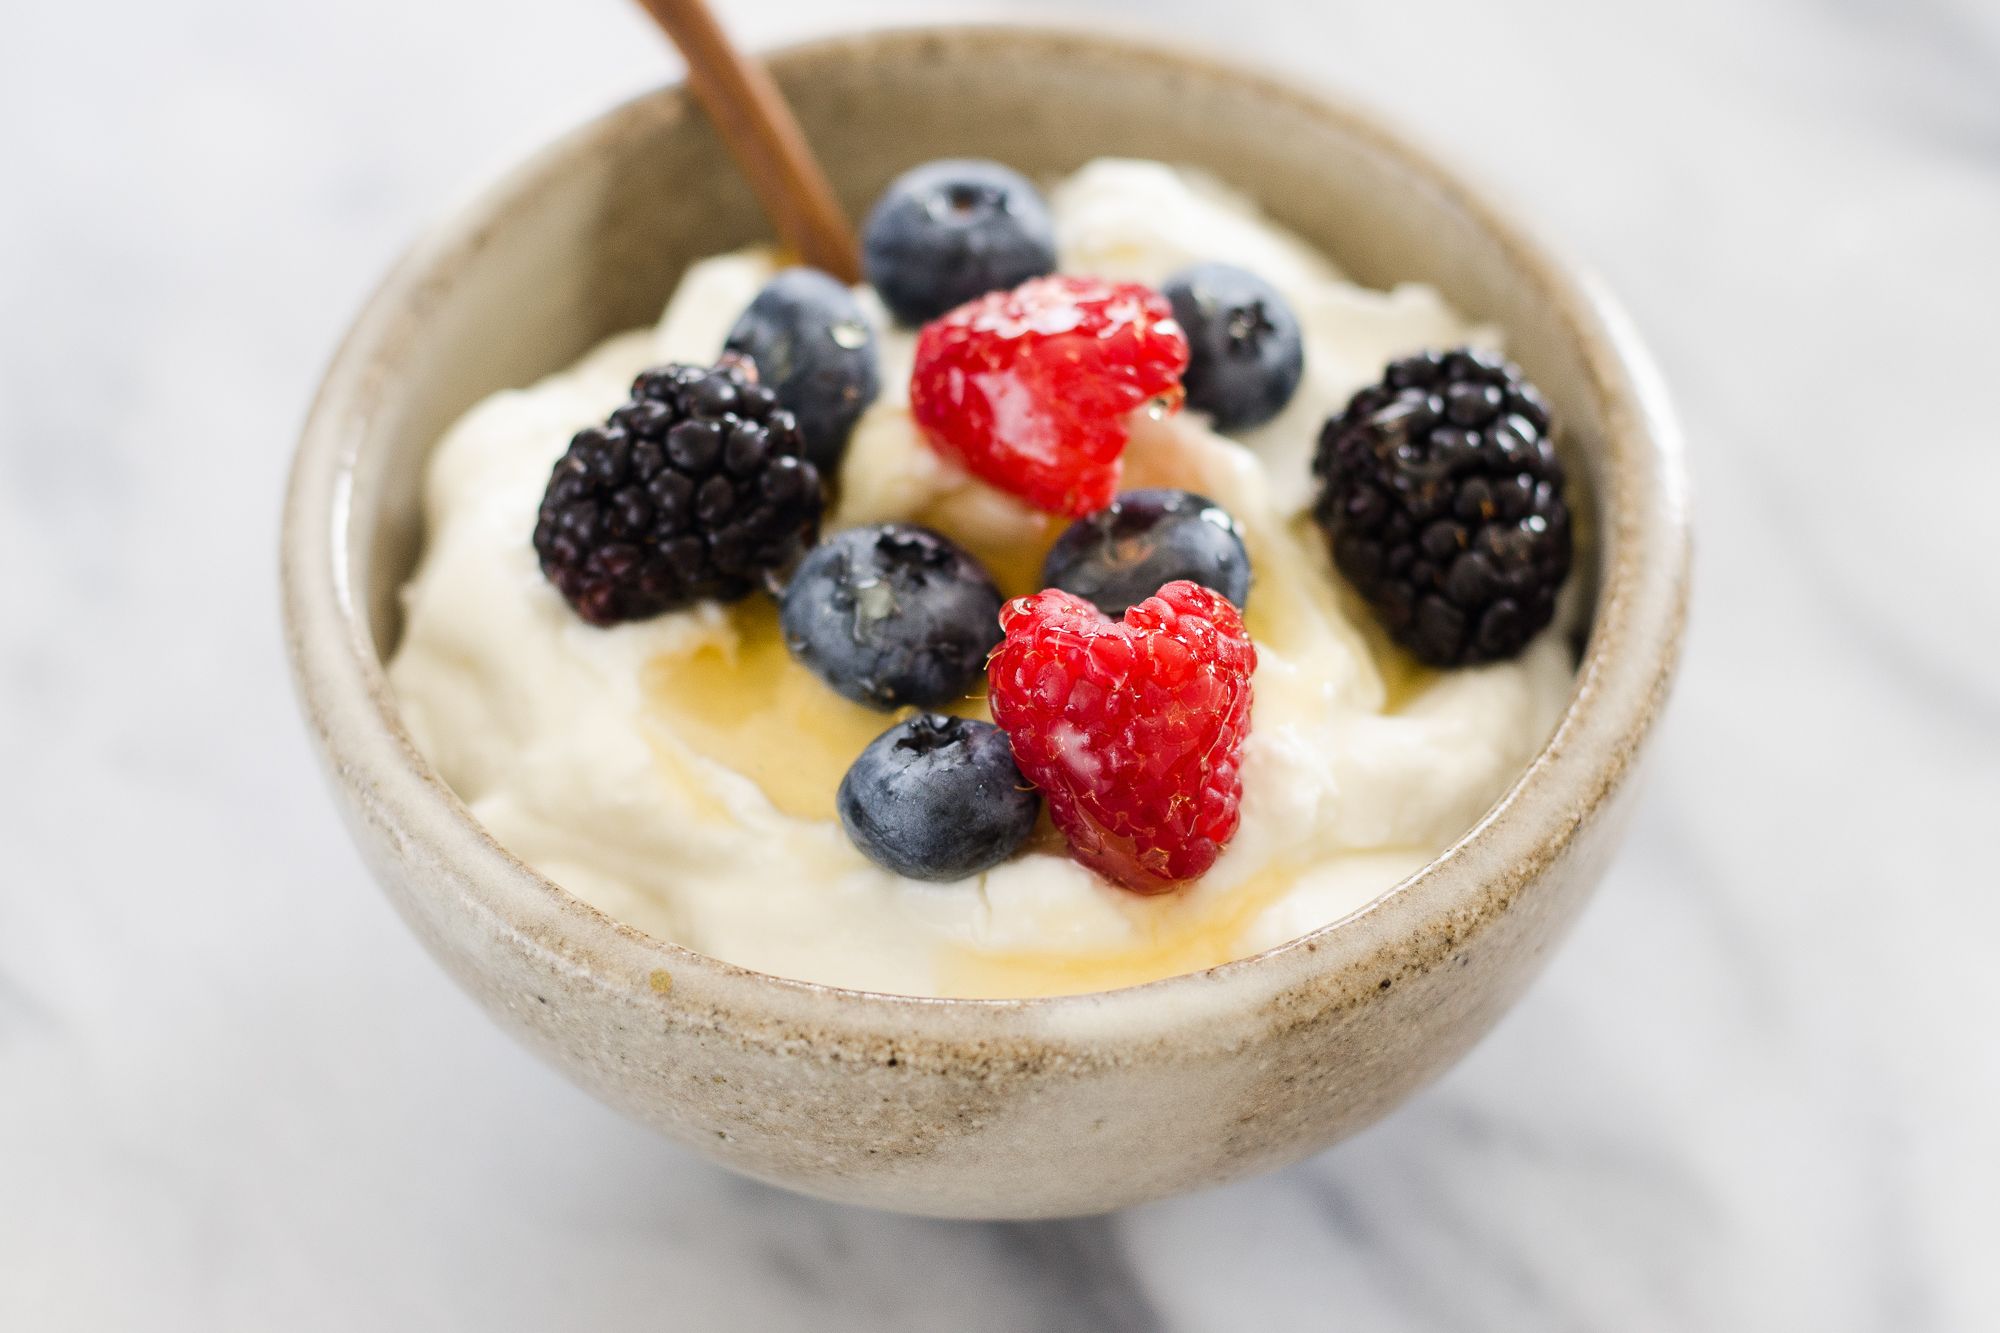 https://hips.hearstapps.com/thepioneerwoman/wp-content/uploads/2017/04/how-to-make-yogurt-and-greek-yogurt-01.jpg